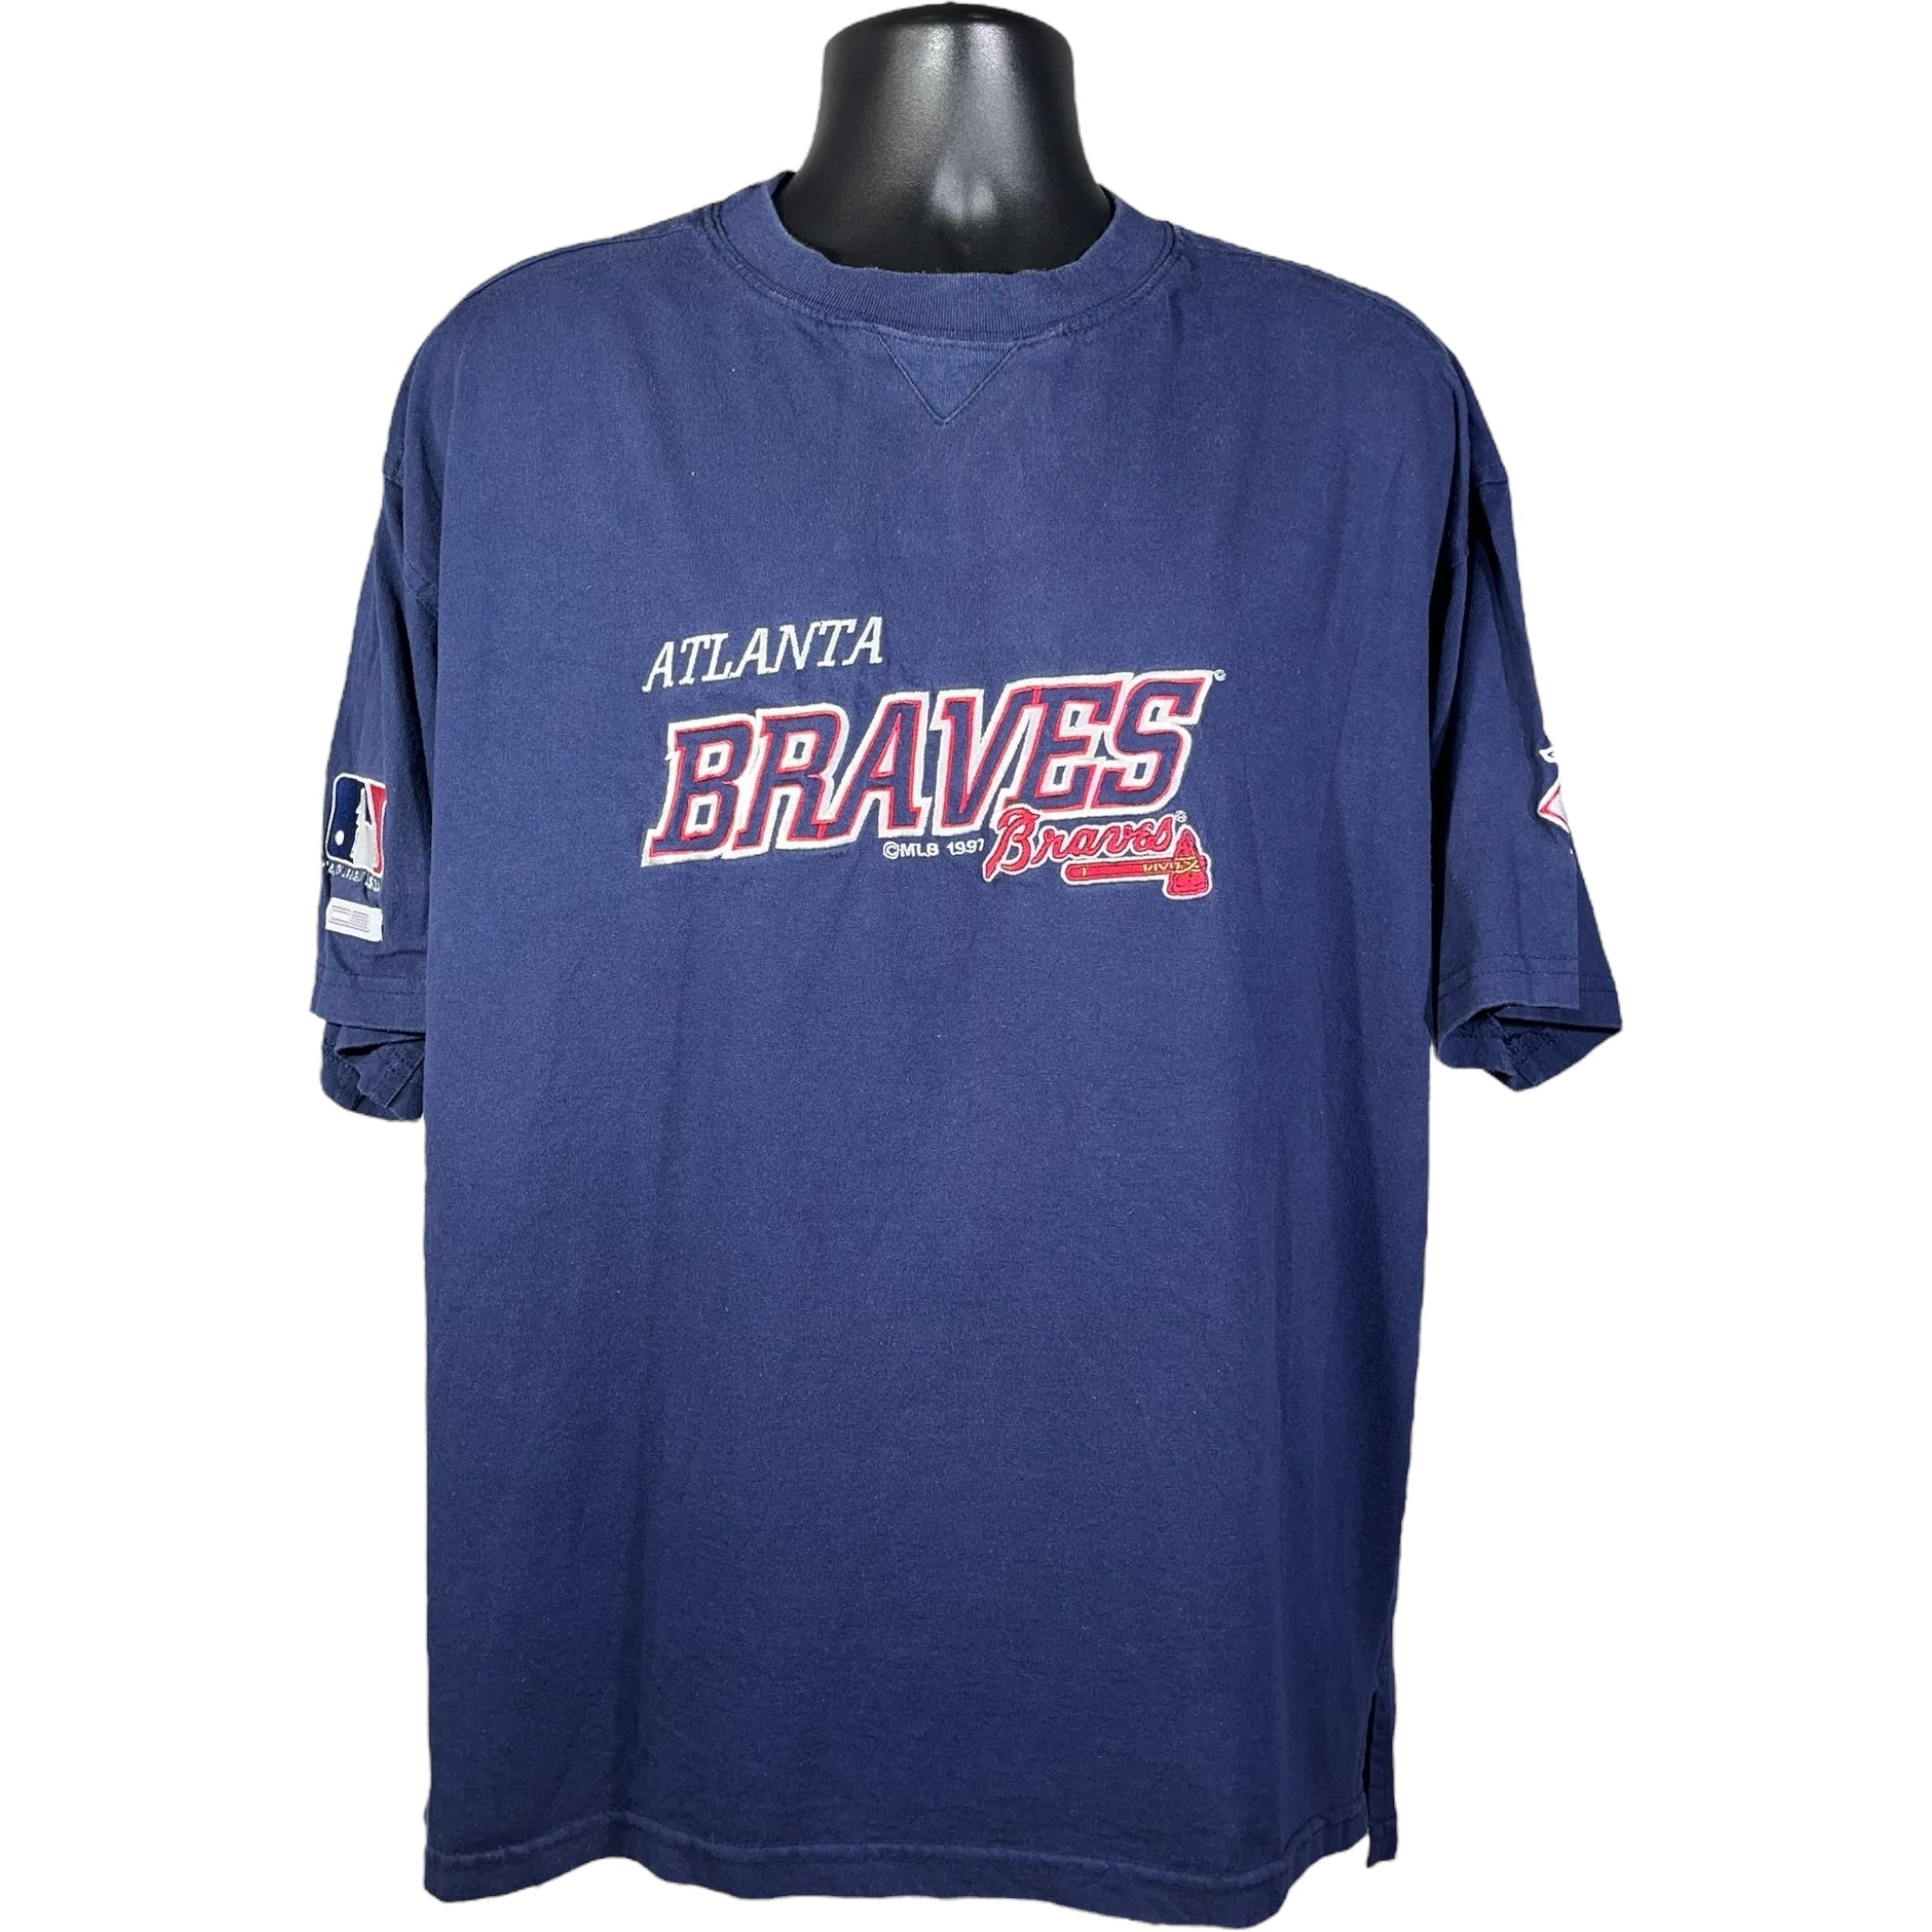 Vintage Atlanta Braves Tee 1997